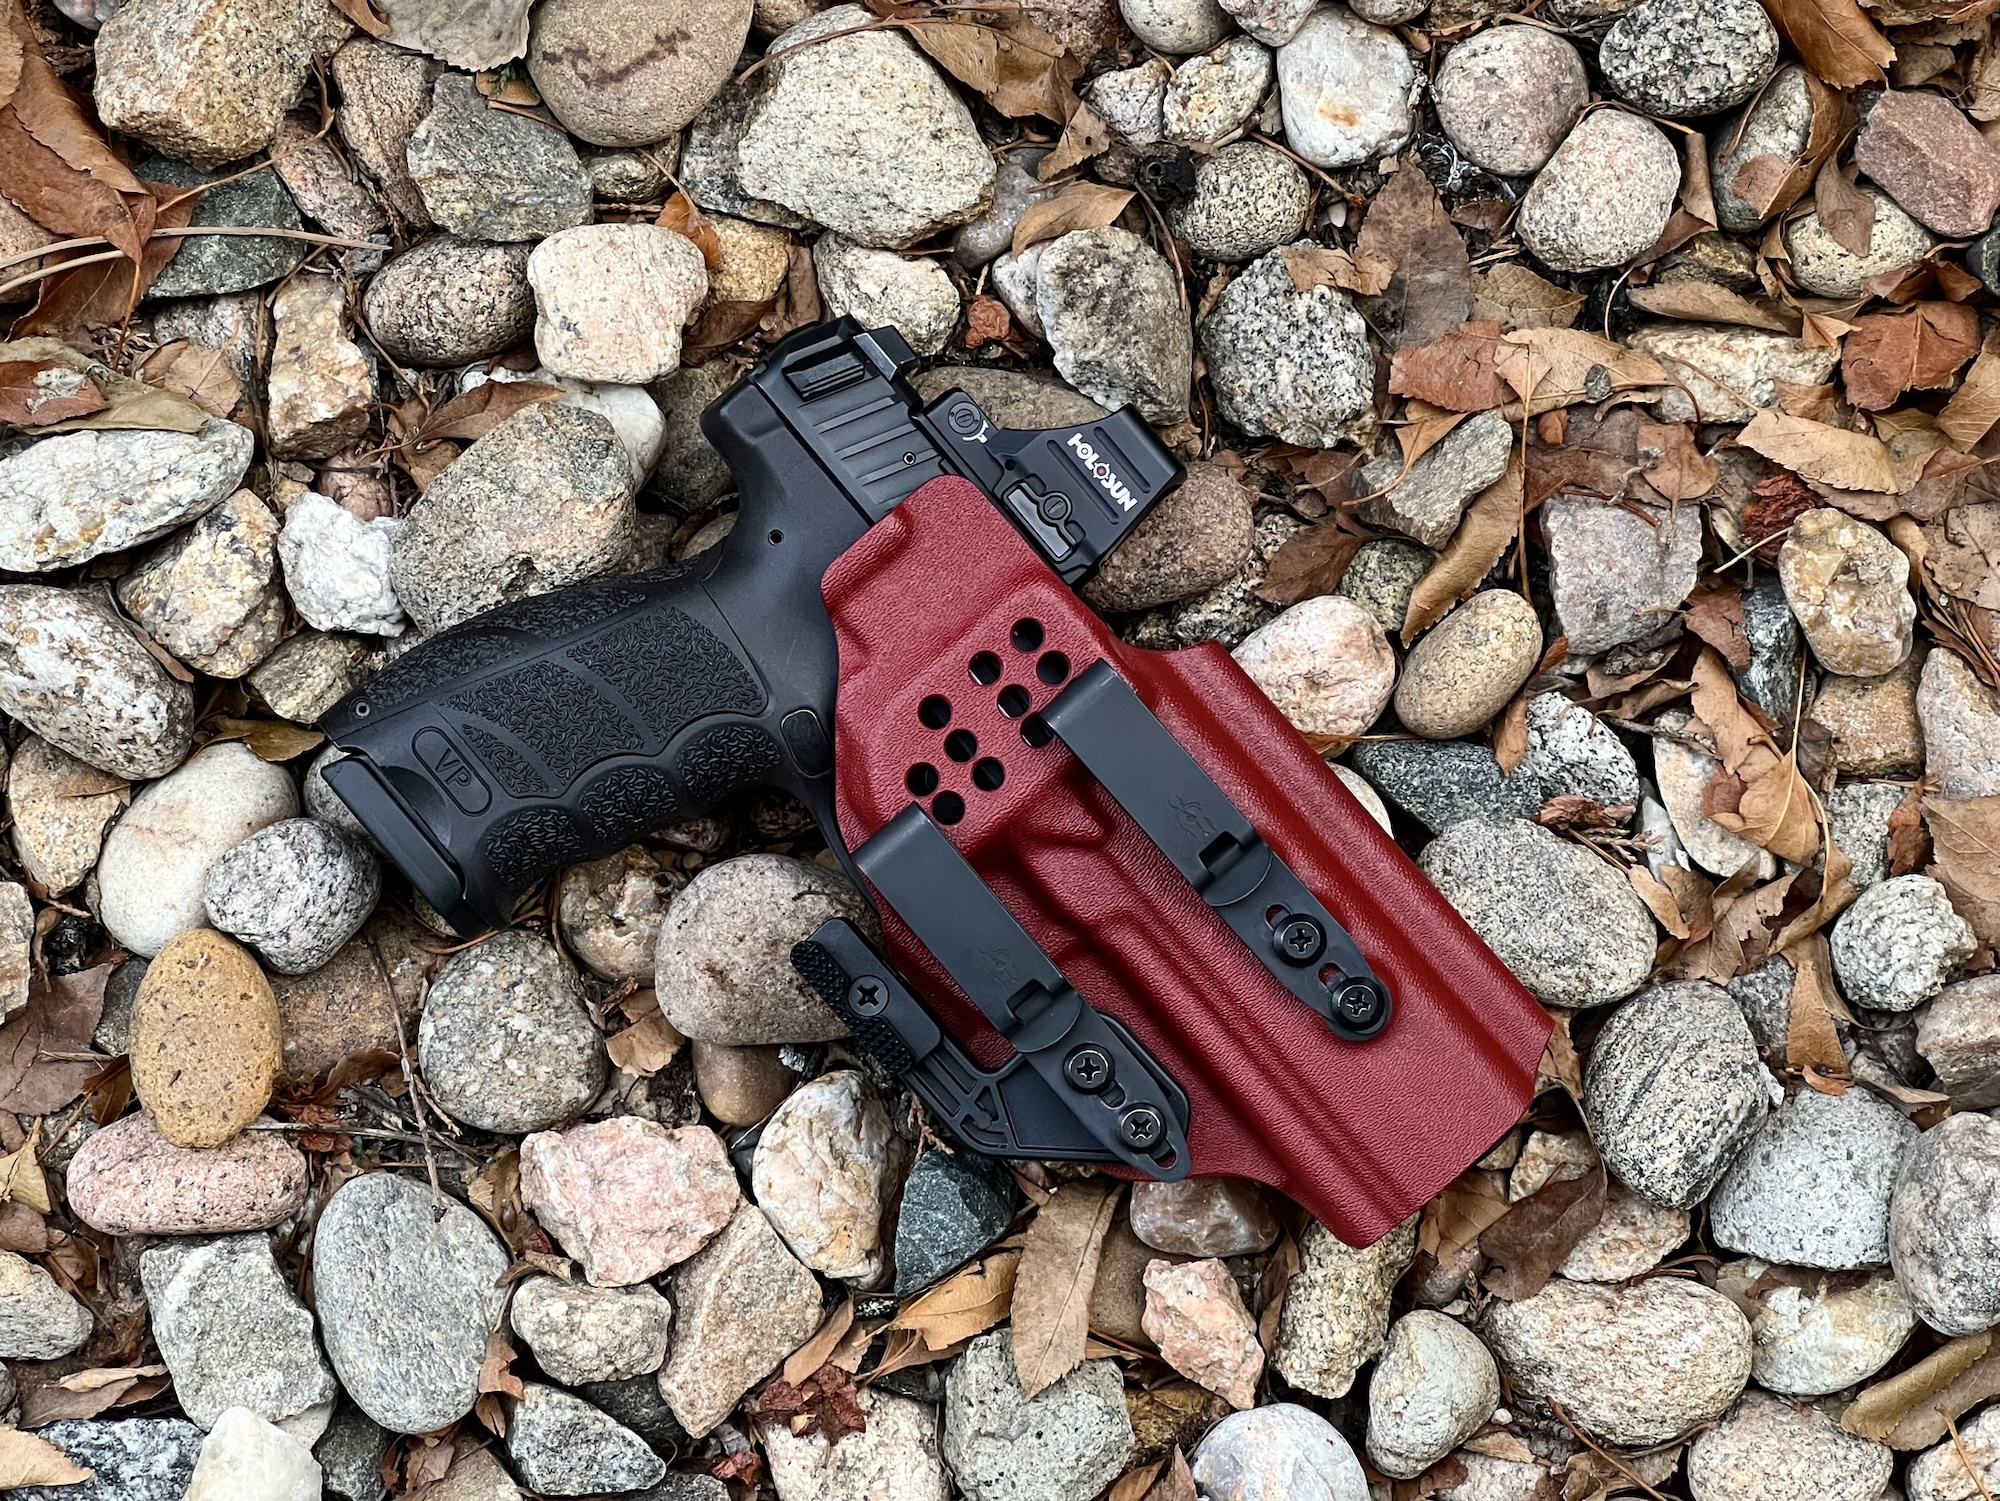 Concealed Carry Glock 43 vs Heckler & Koch VP9SK